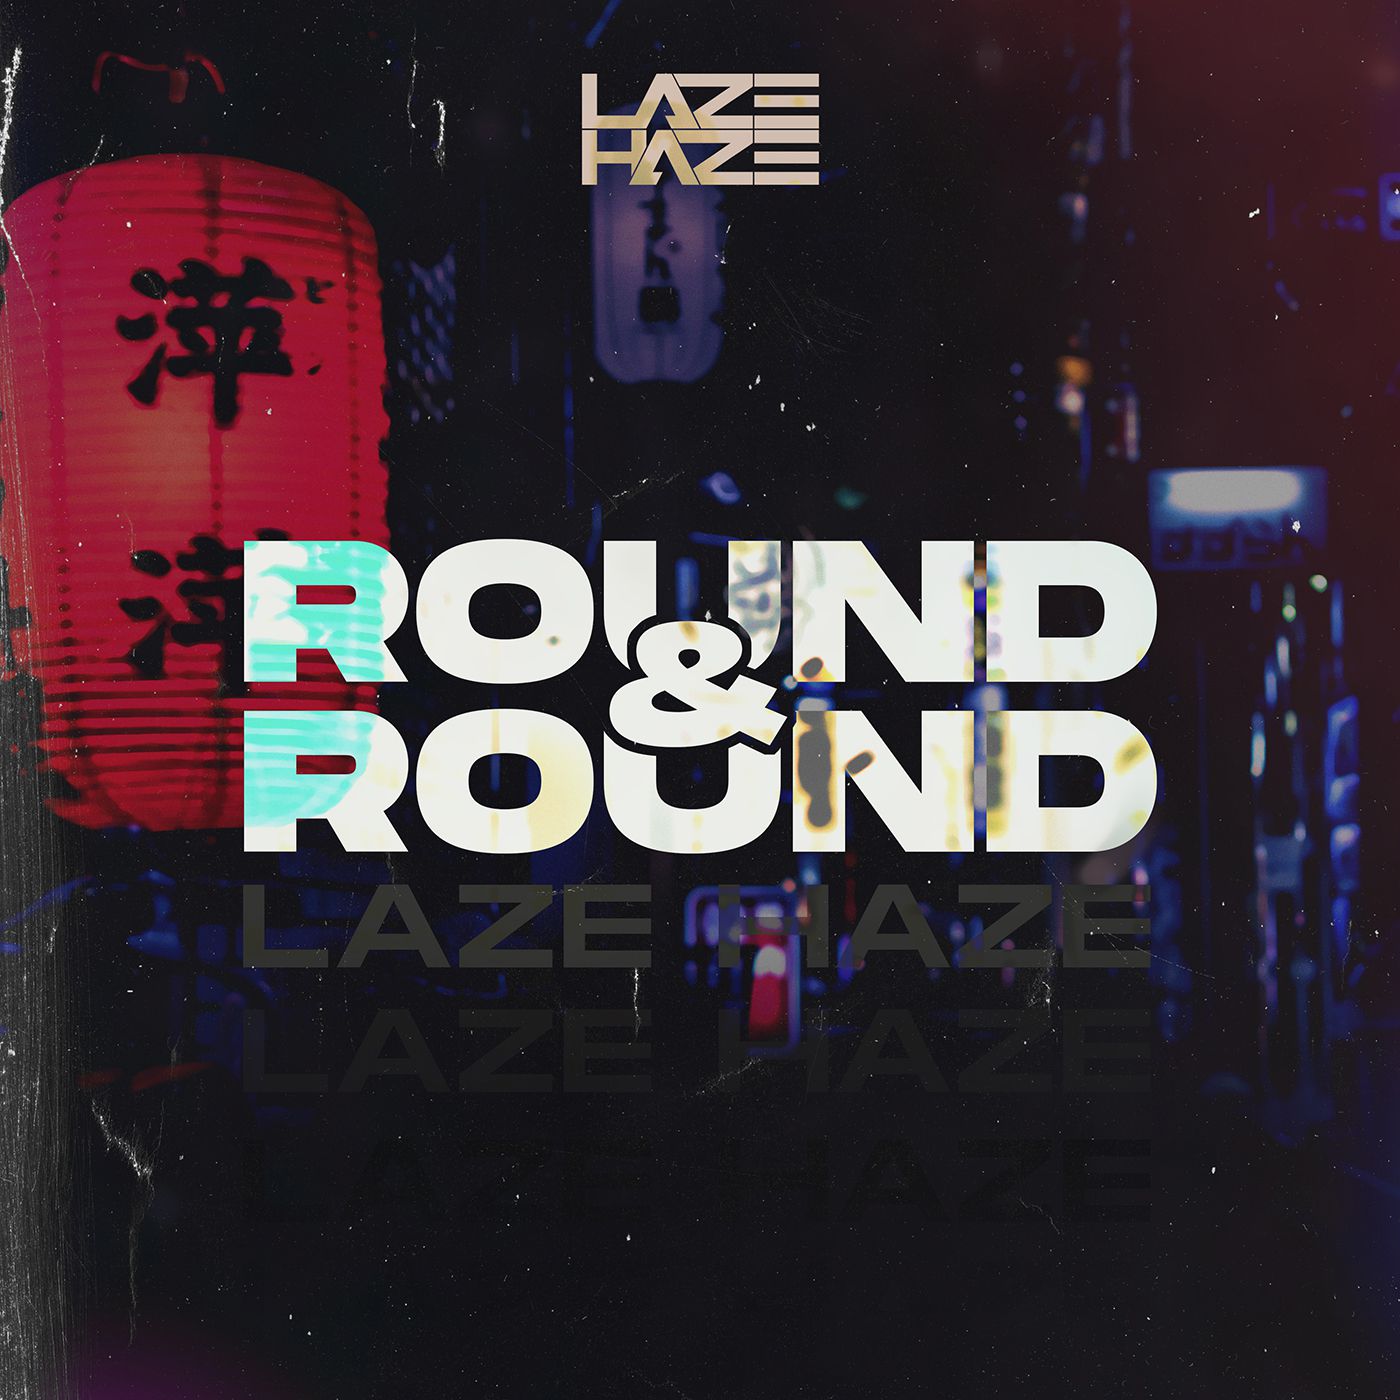 Laze Haze veröffentlicht „Round & Round“ – new face on the scene